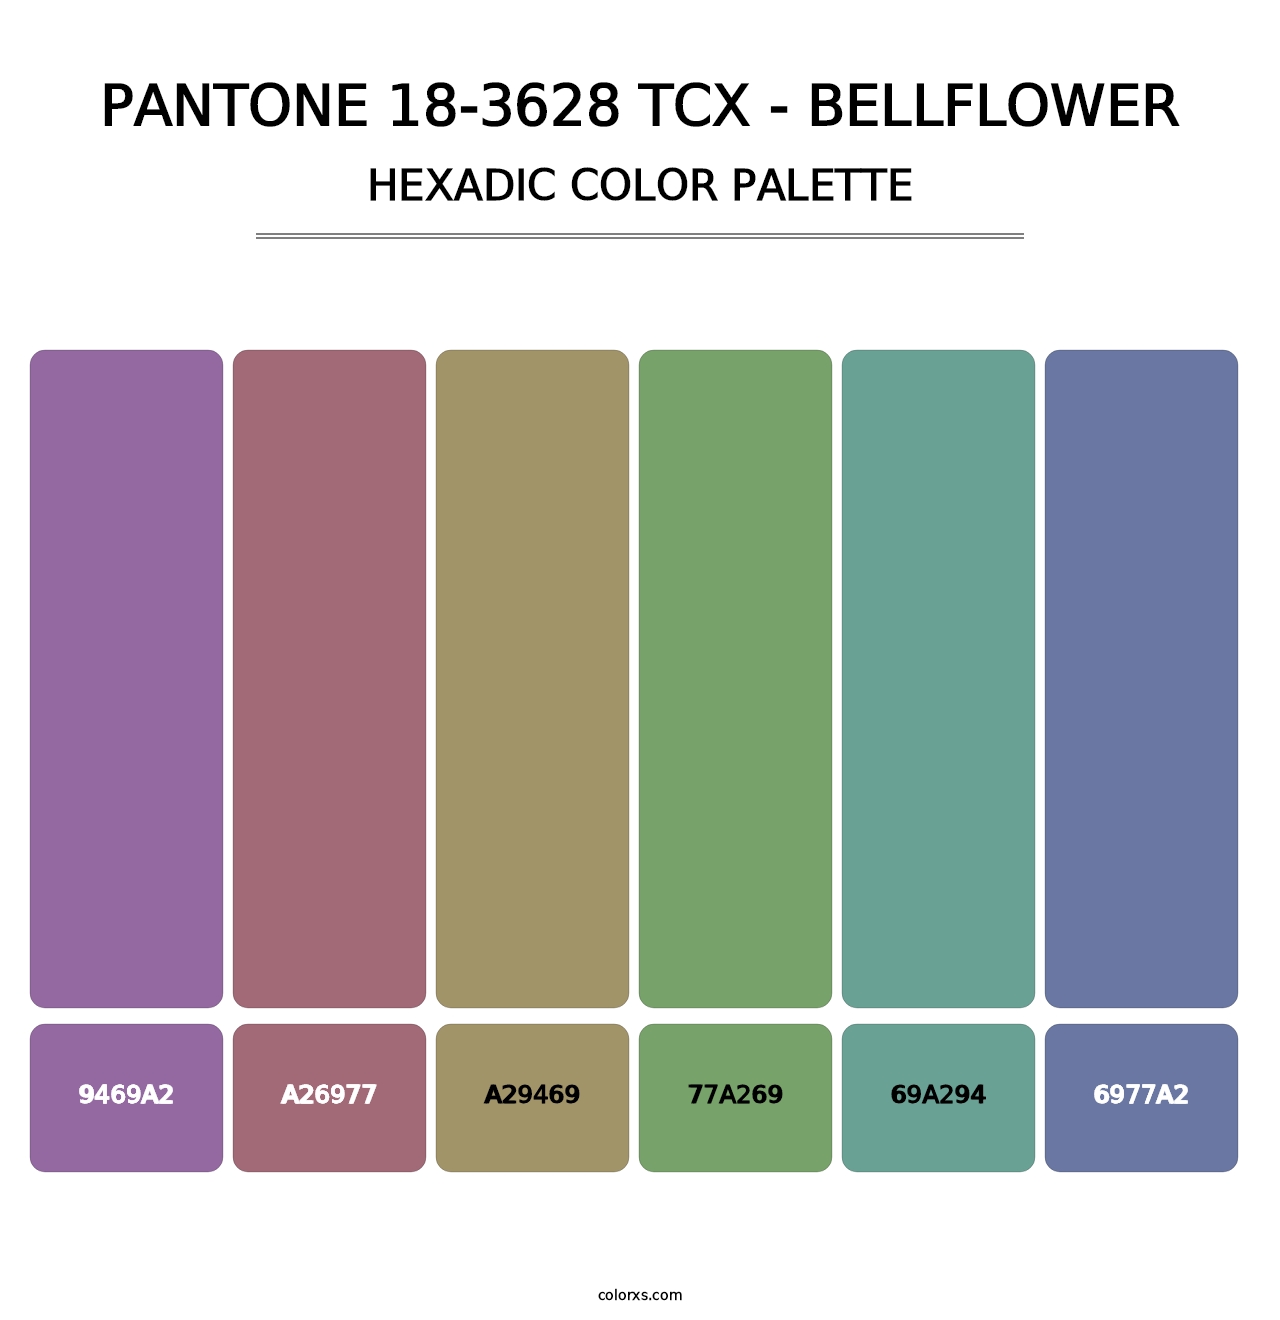 PANTONE 18-3628 TCX - Bellflower - Hexadic Color Palette